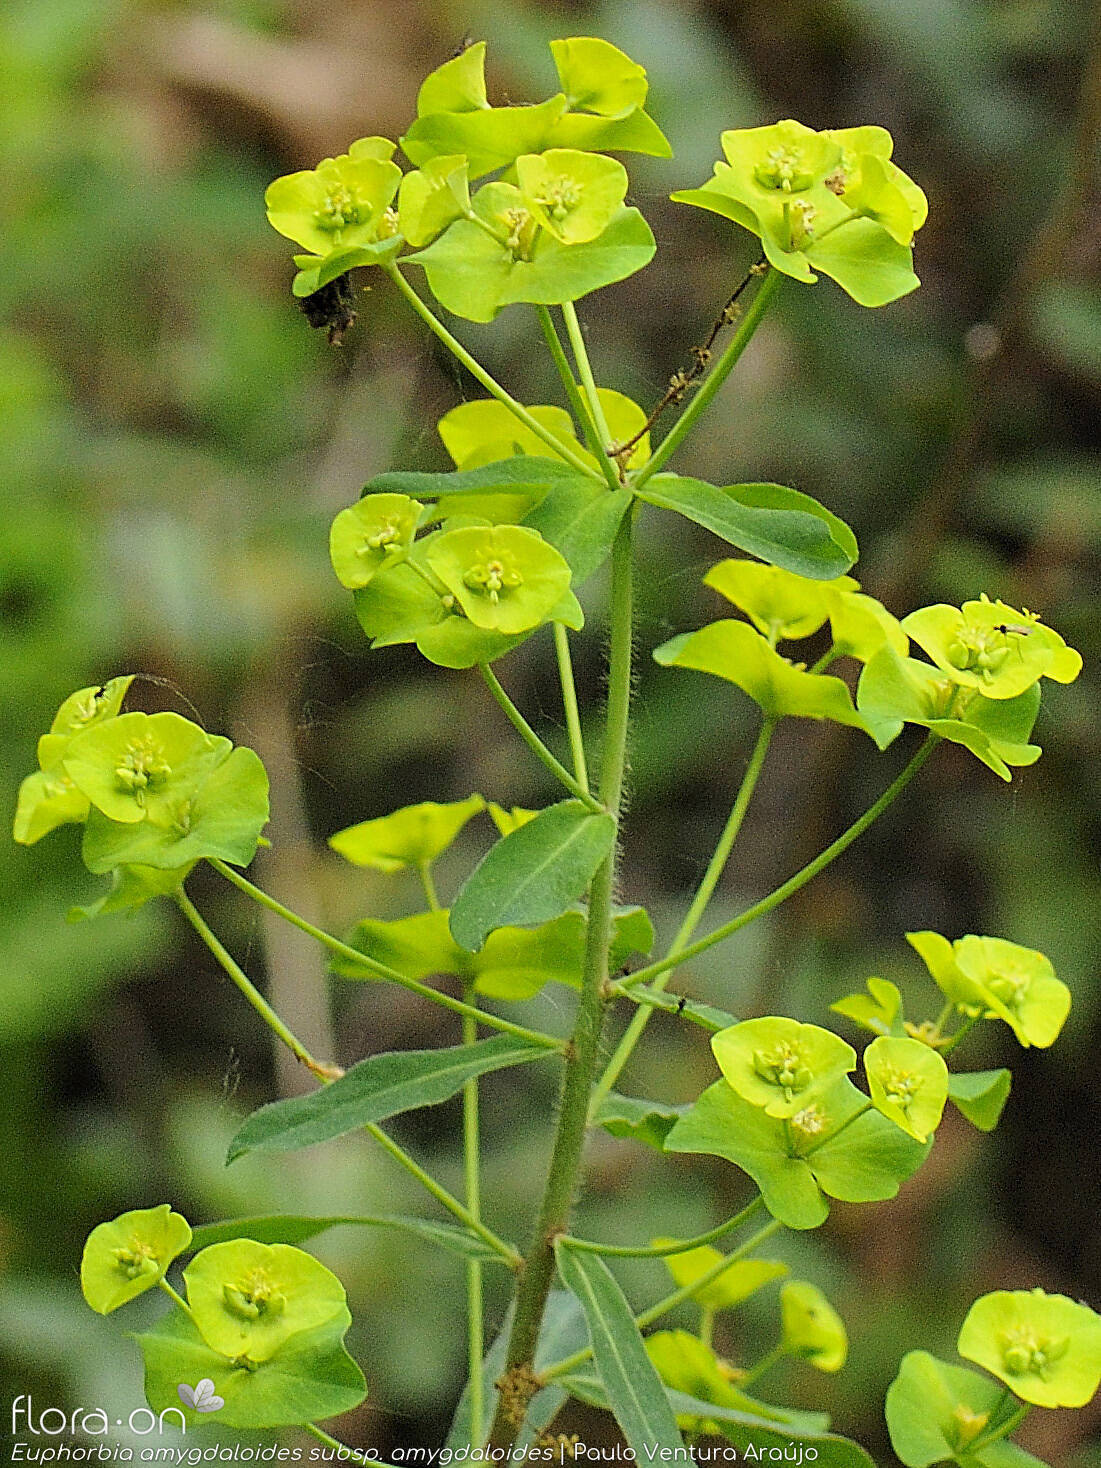 Euphorbia amygdaloides amygdaloides - Flor (geral) | Paulo Ventura Araújo; CC BY-NC 4.0